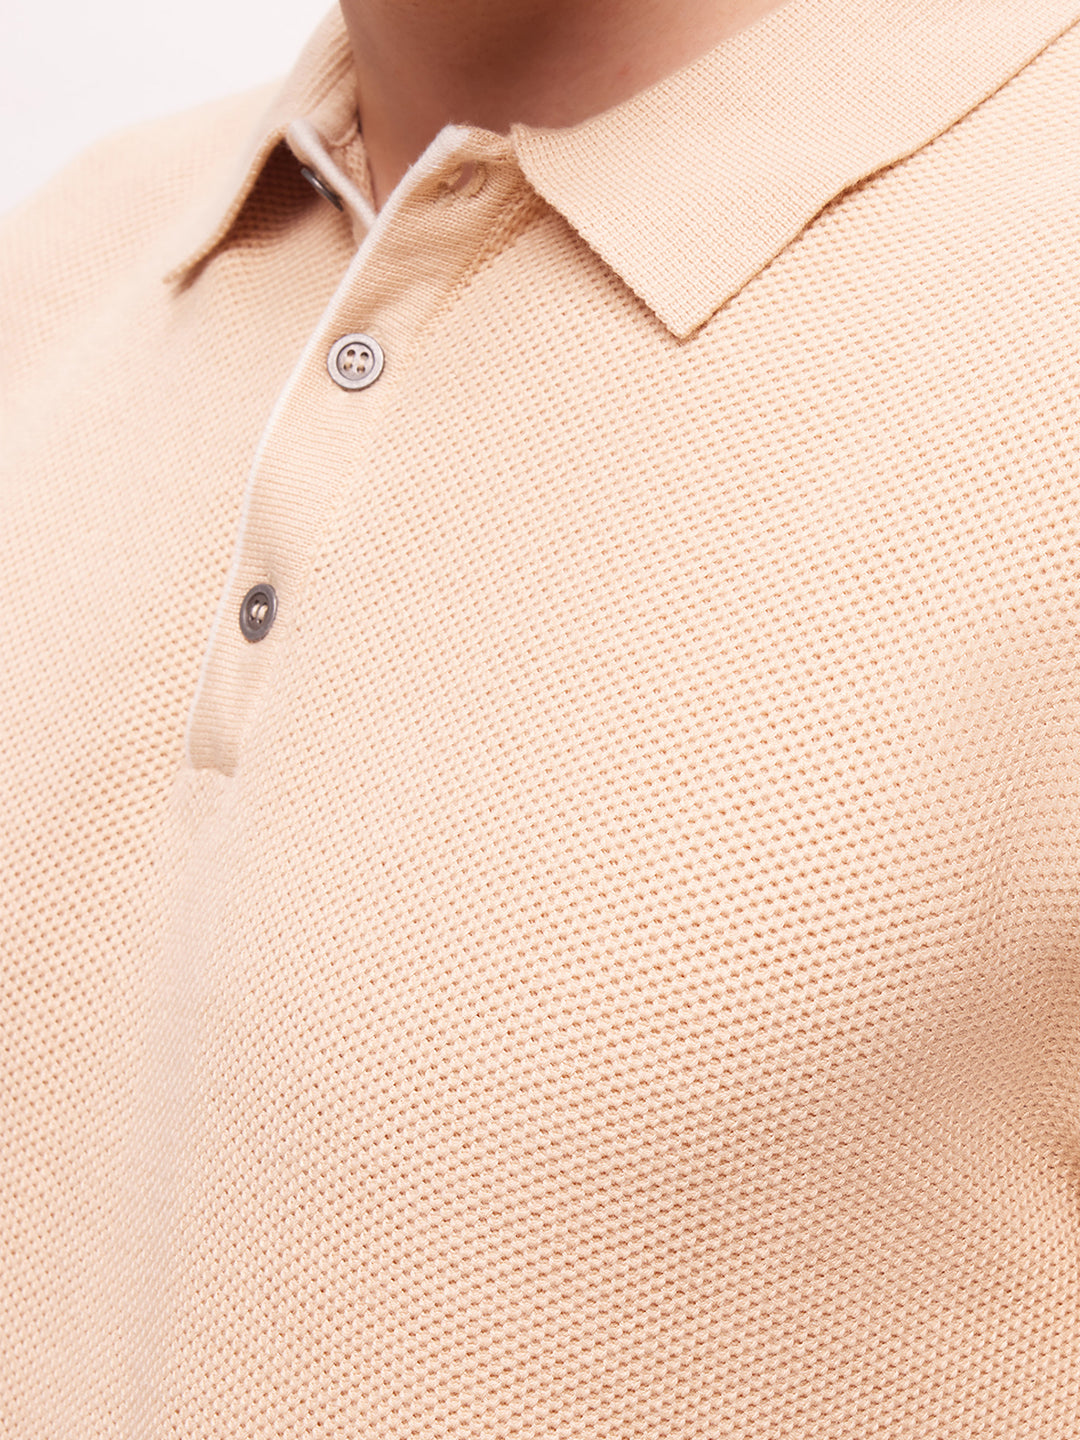 Bombay High Men's Beige Sand Premium Cotton Knit Polo T-Shirt